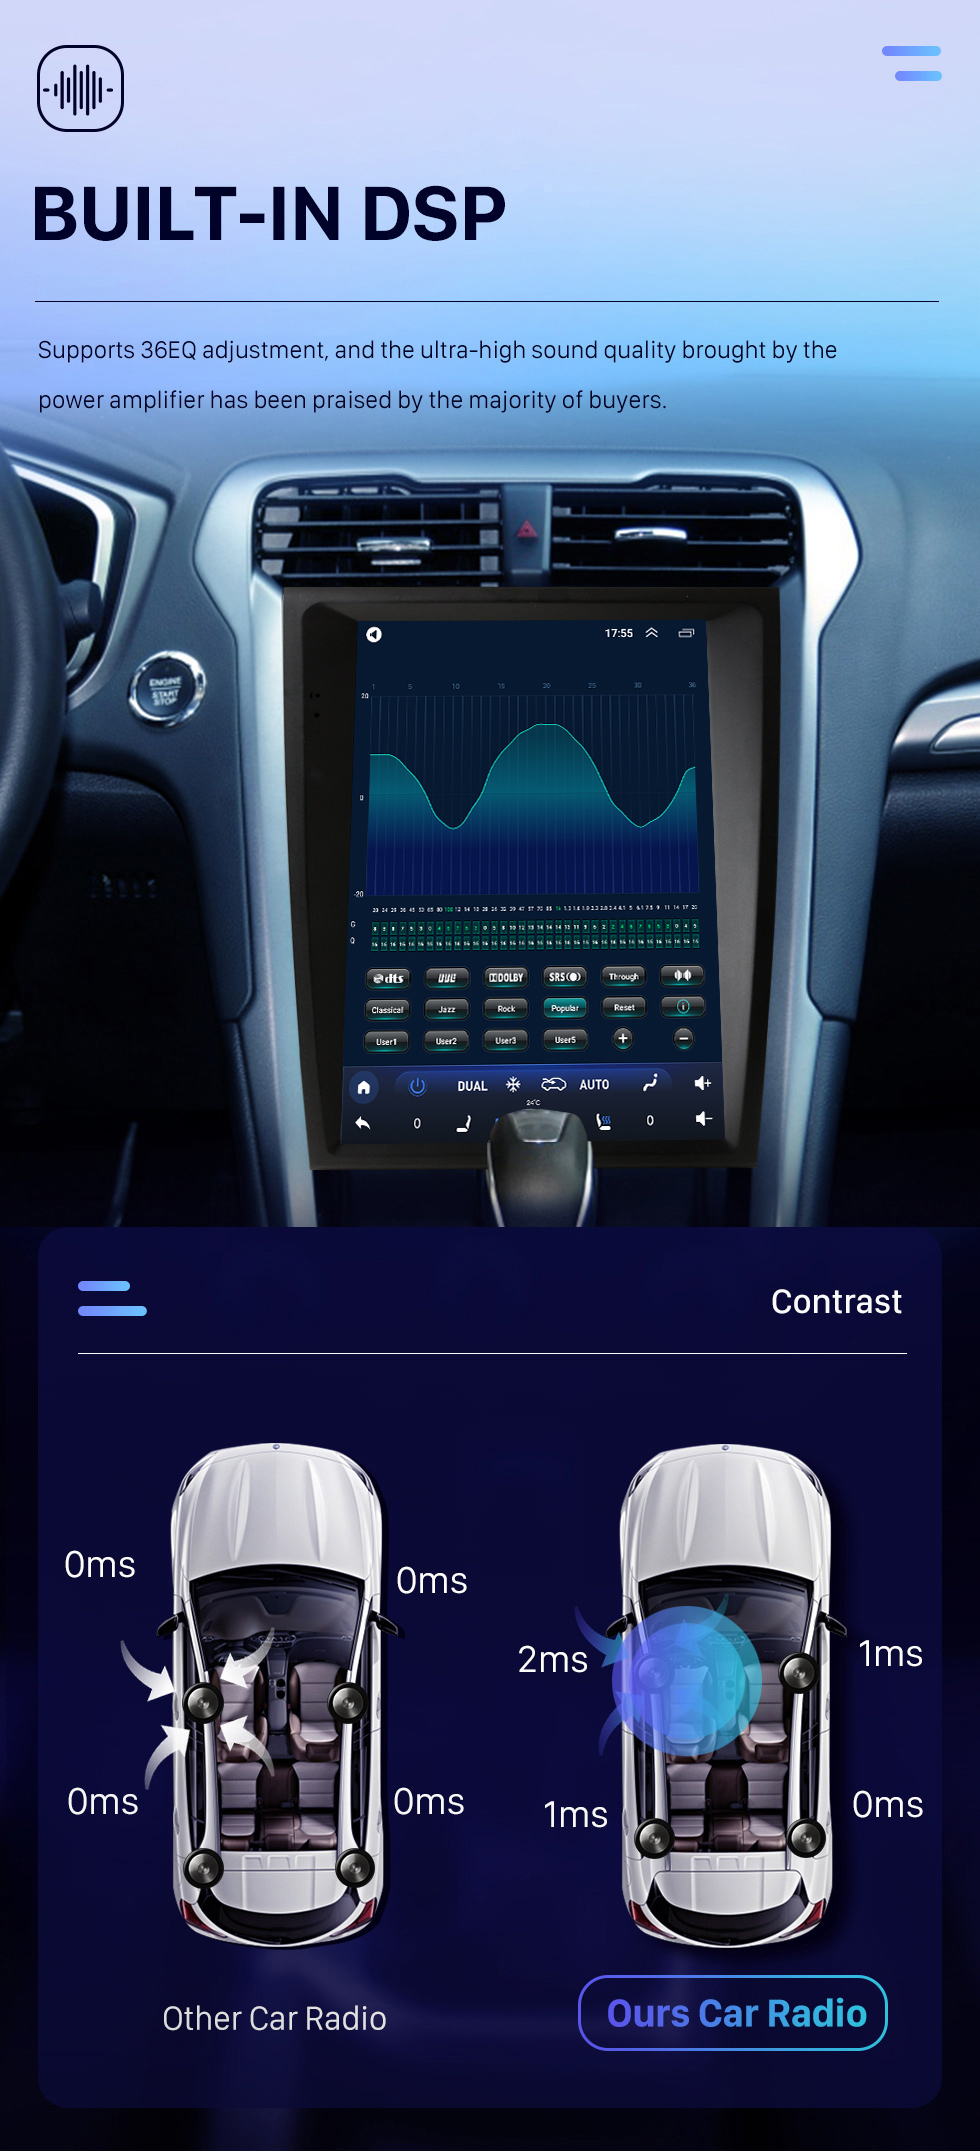 Seicane Radio de navigation GPS à écran tactile Android 10.0 HD de 12,1 pouces pour Ford Mondeo Fusion MK5 2013-2018 avec prise en charge Bluetooth Carplay Caméra TPMS AHD